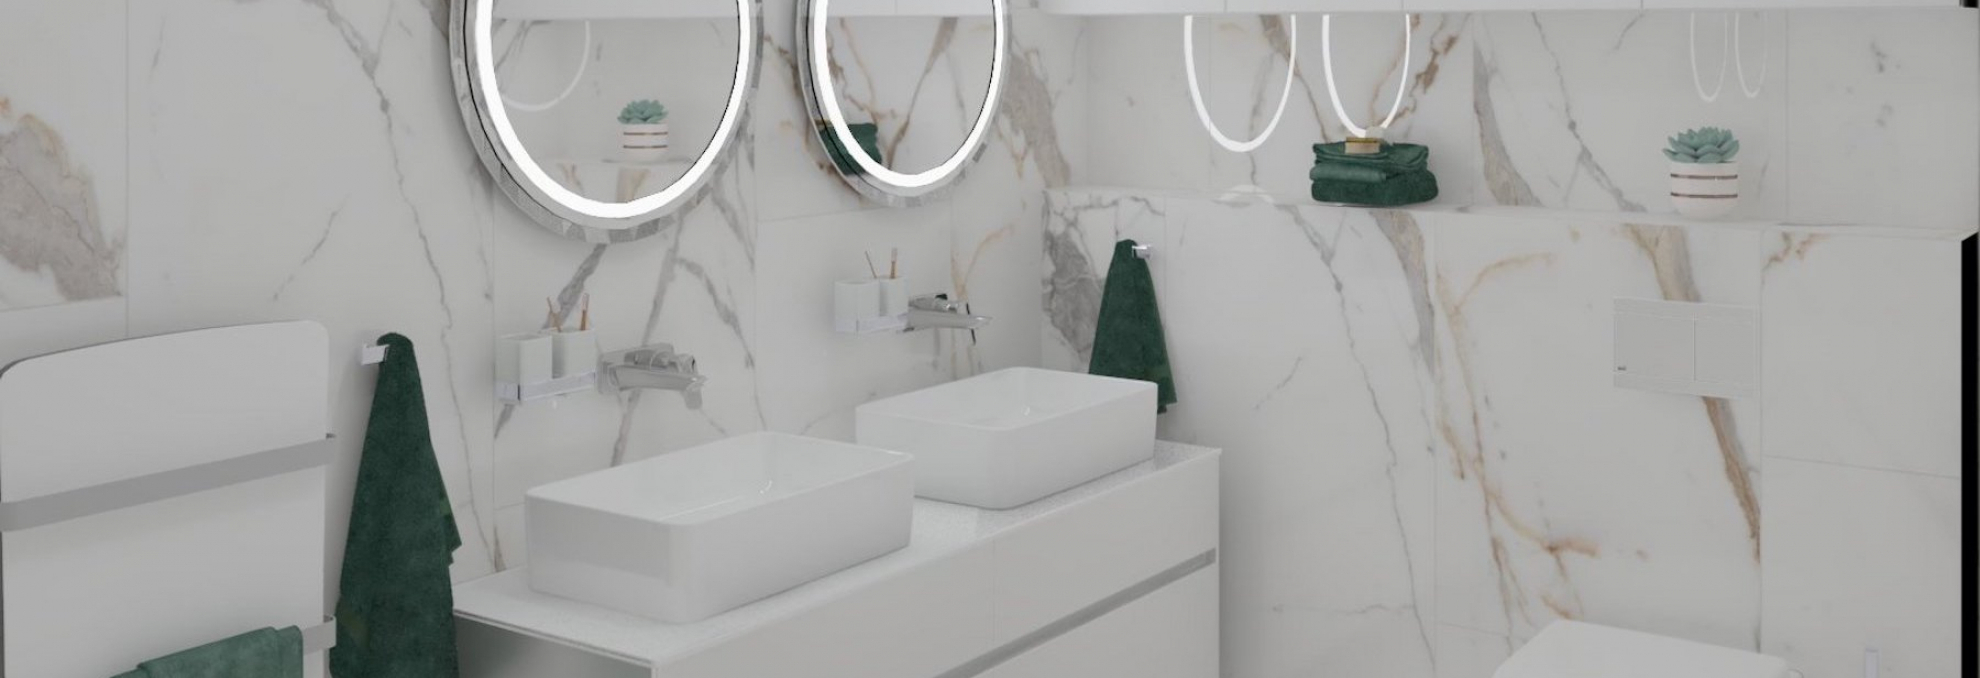 Vizualizace koupelny v designu bílého mramoru Les Origines